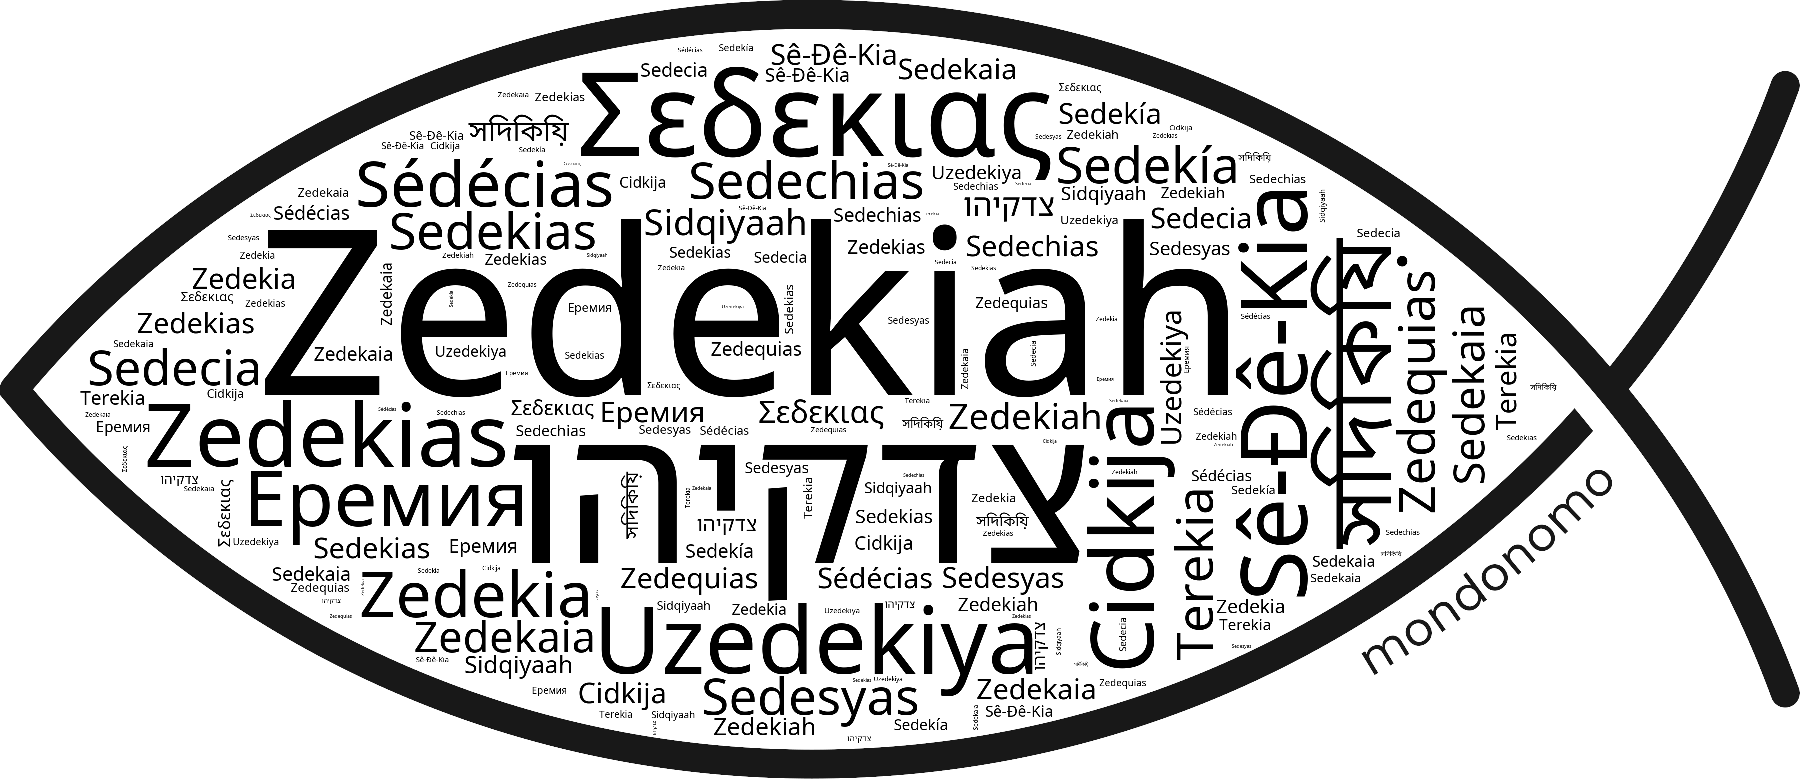 Name Zedekiah in the world's Bibles